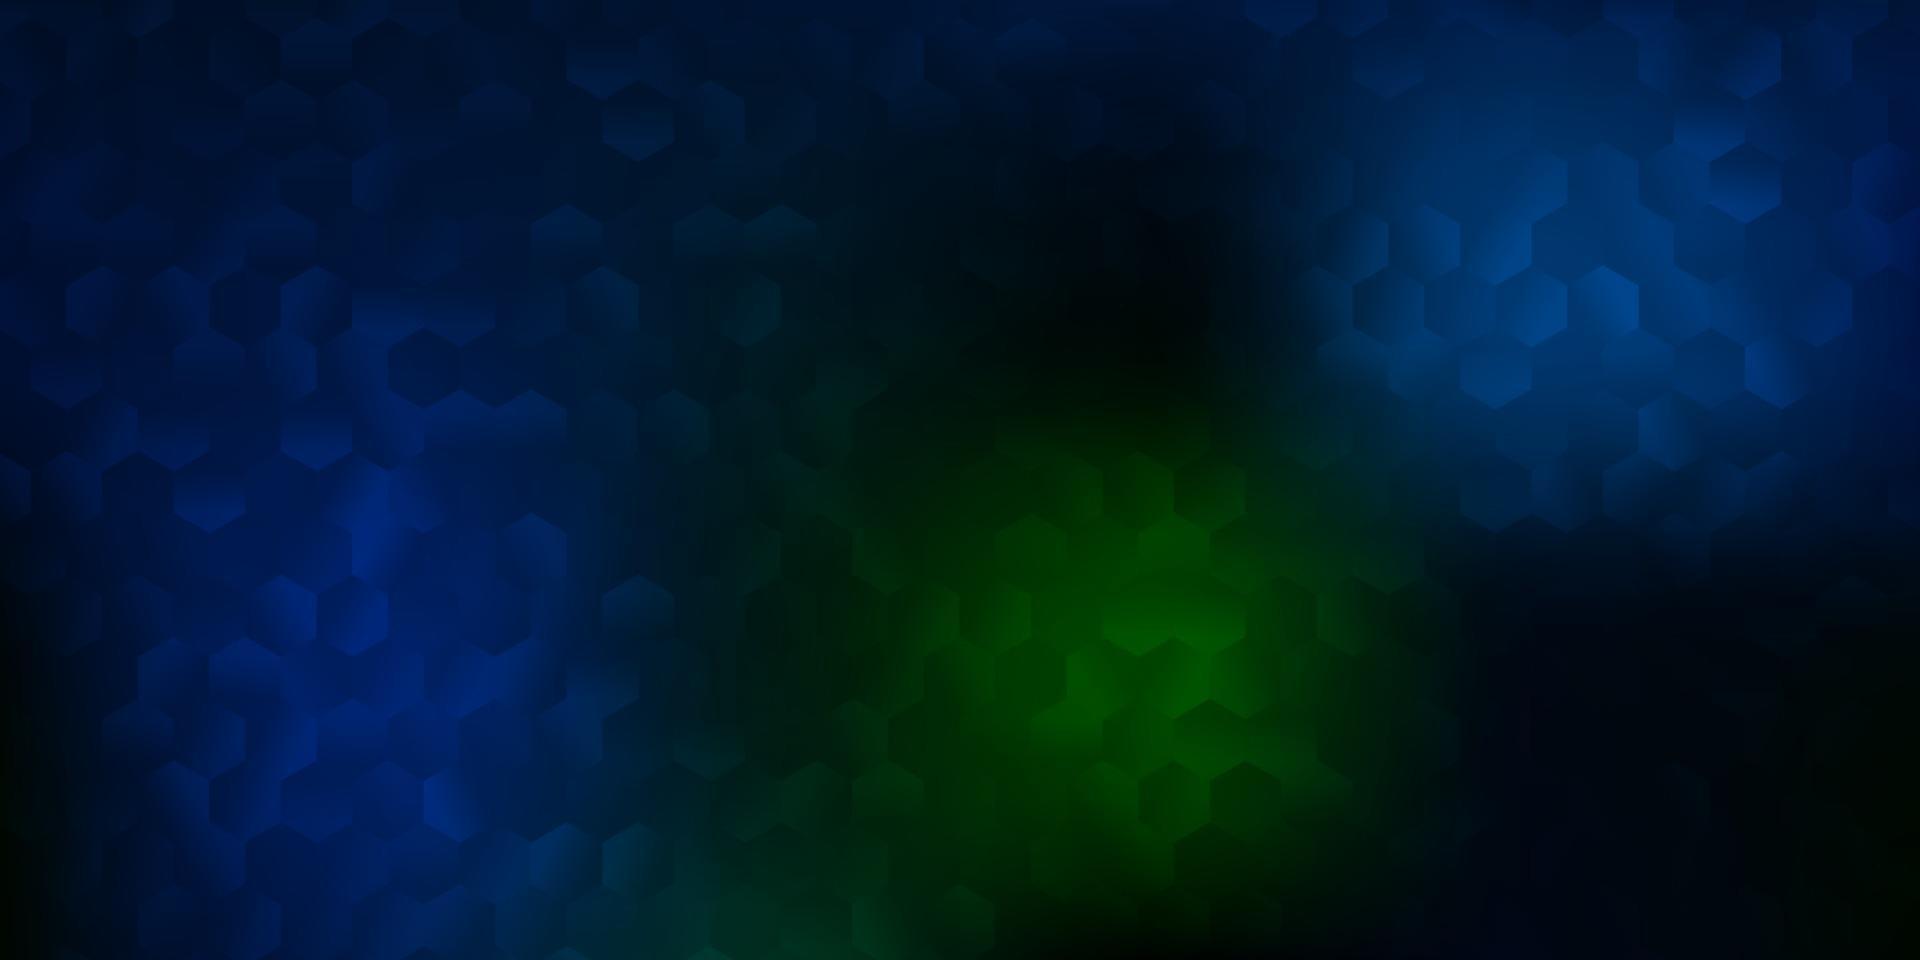 padrão de vetor azul e verde escuro com hexágonos.